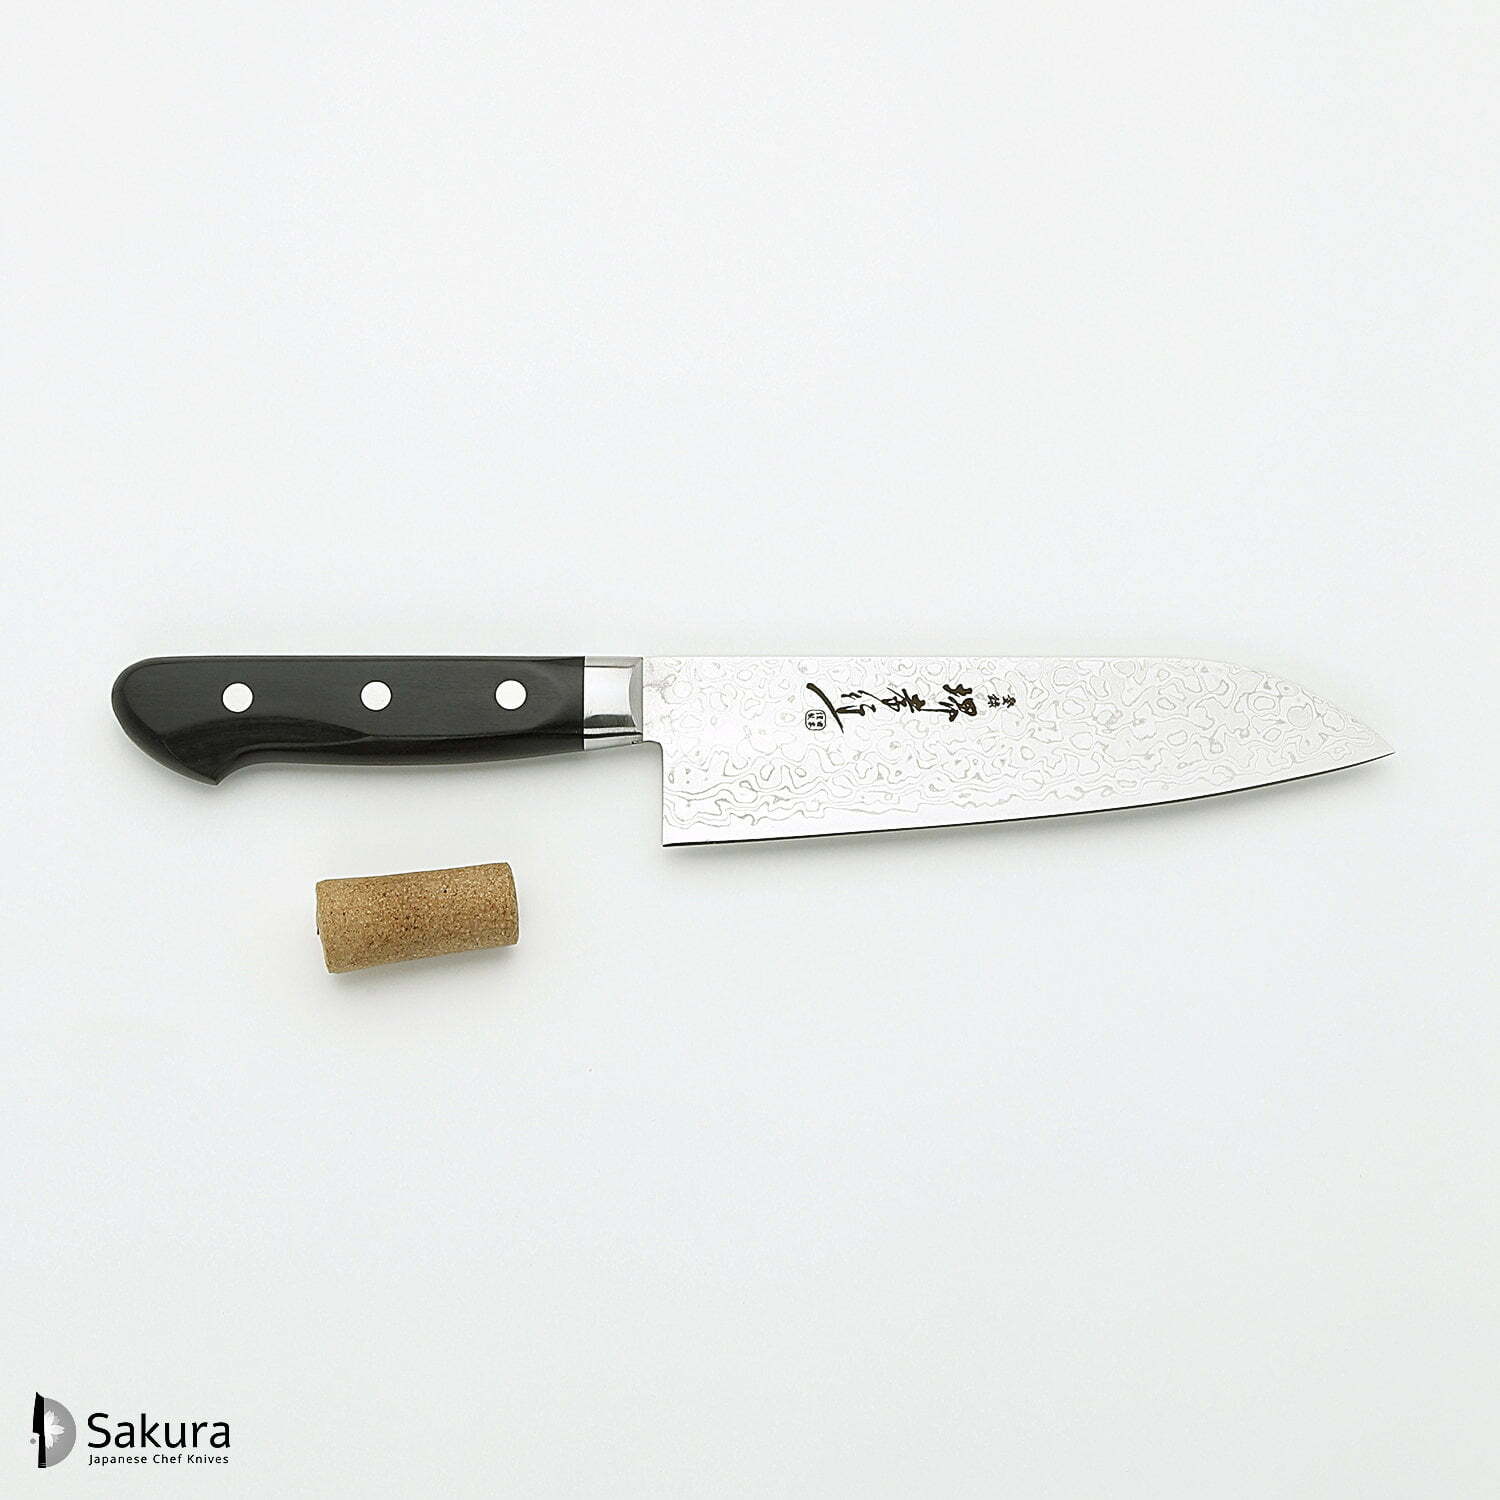 סכין רב-תכליתית סָנטוֹקוּ 170מ״מ מחושלת בעבודת יד 45 שכבות: פלדת פחמן יפנית AUS10 עטופה 44 שכבות פלדת דמשק אל-חלד גימור דמשק מראה 45 שכבות סאקאיי טקיוקי יפן